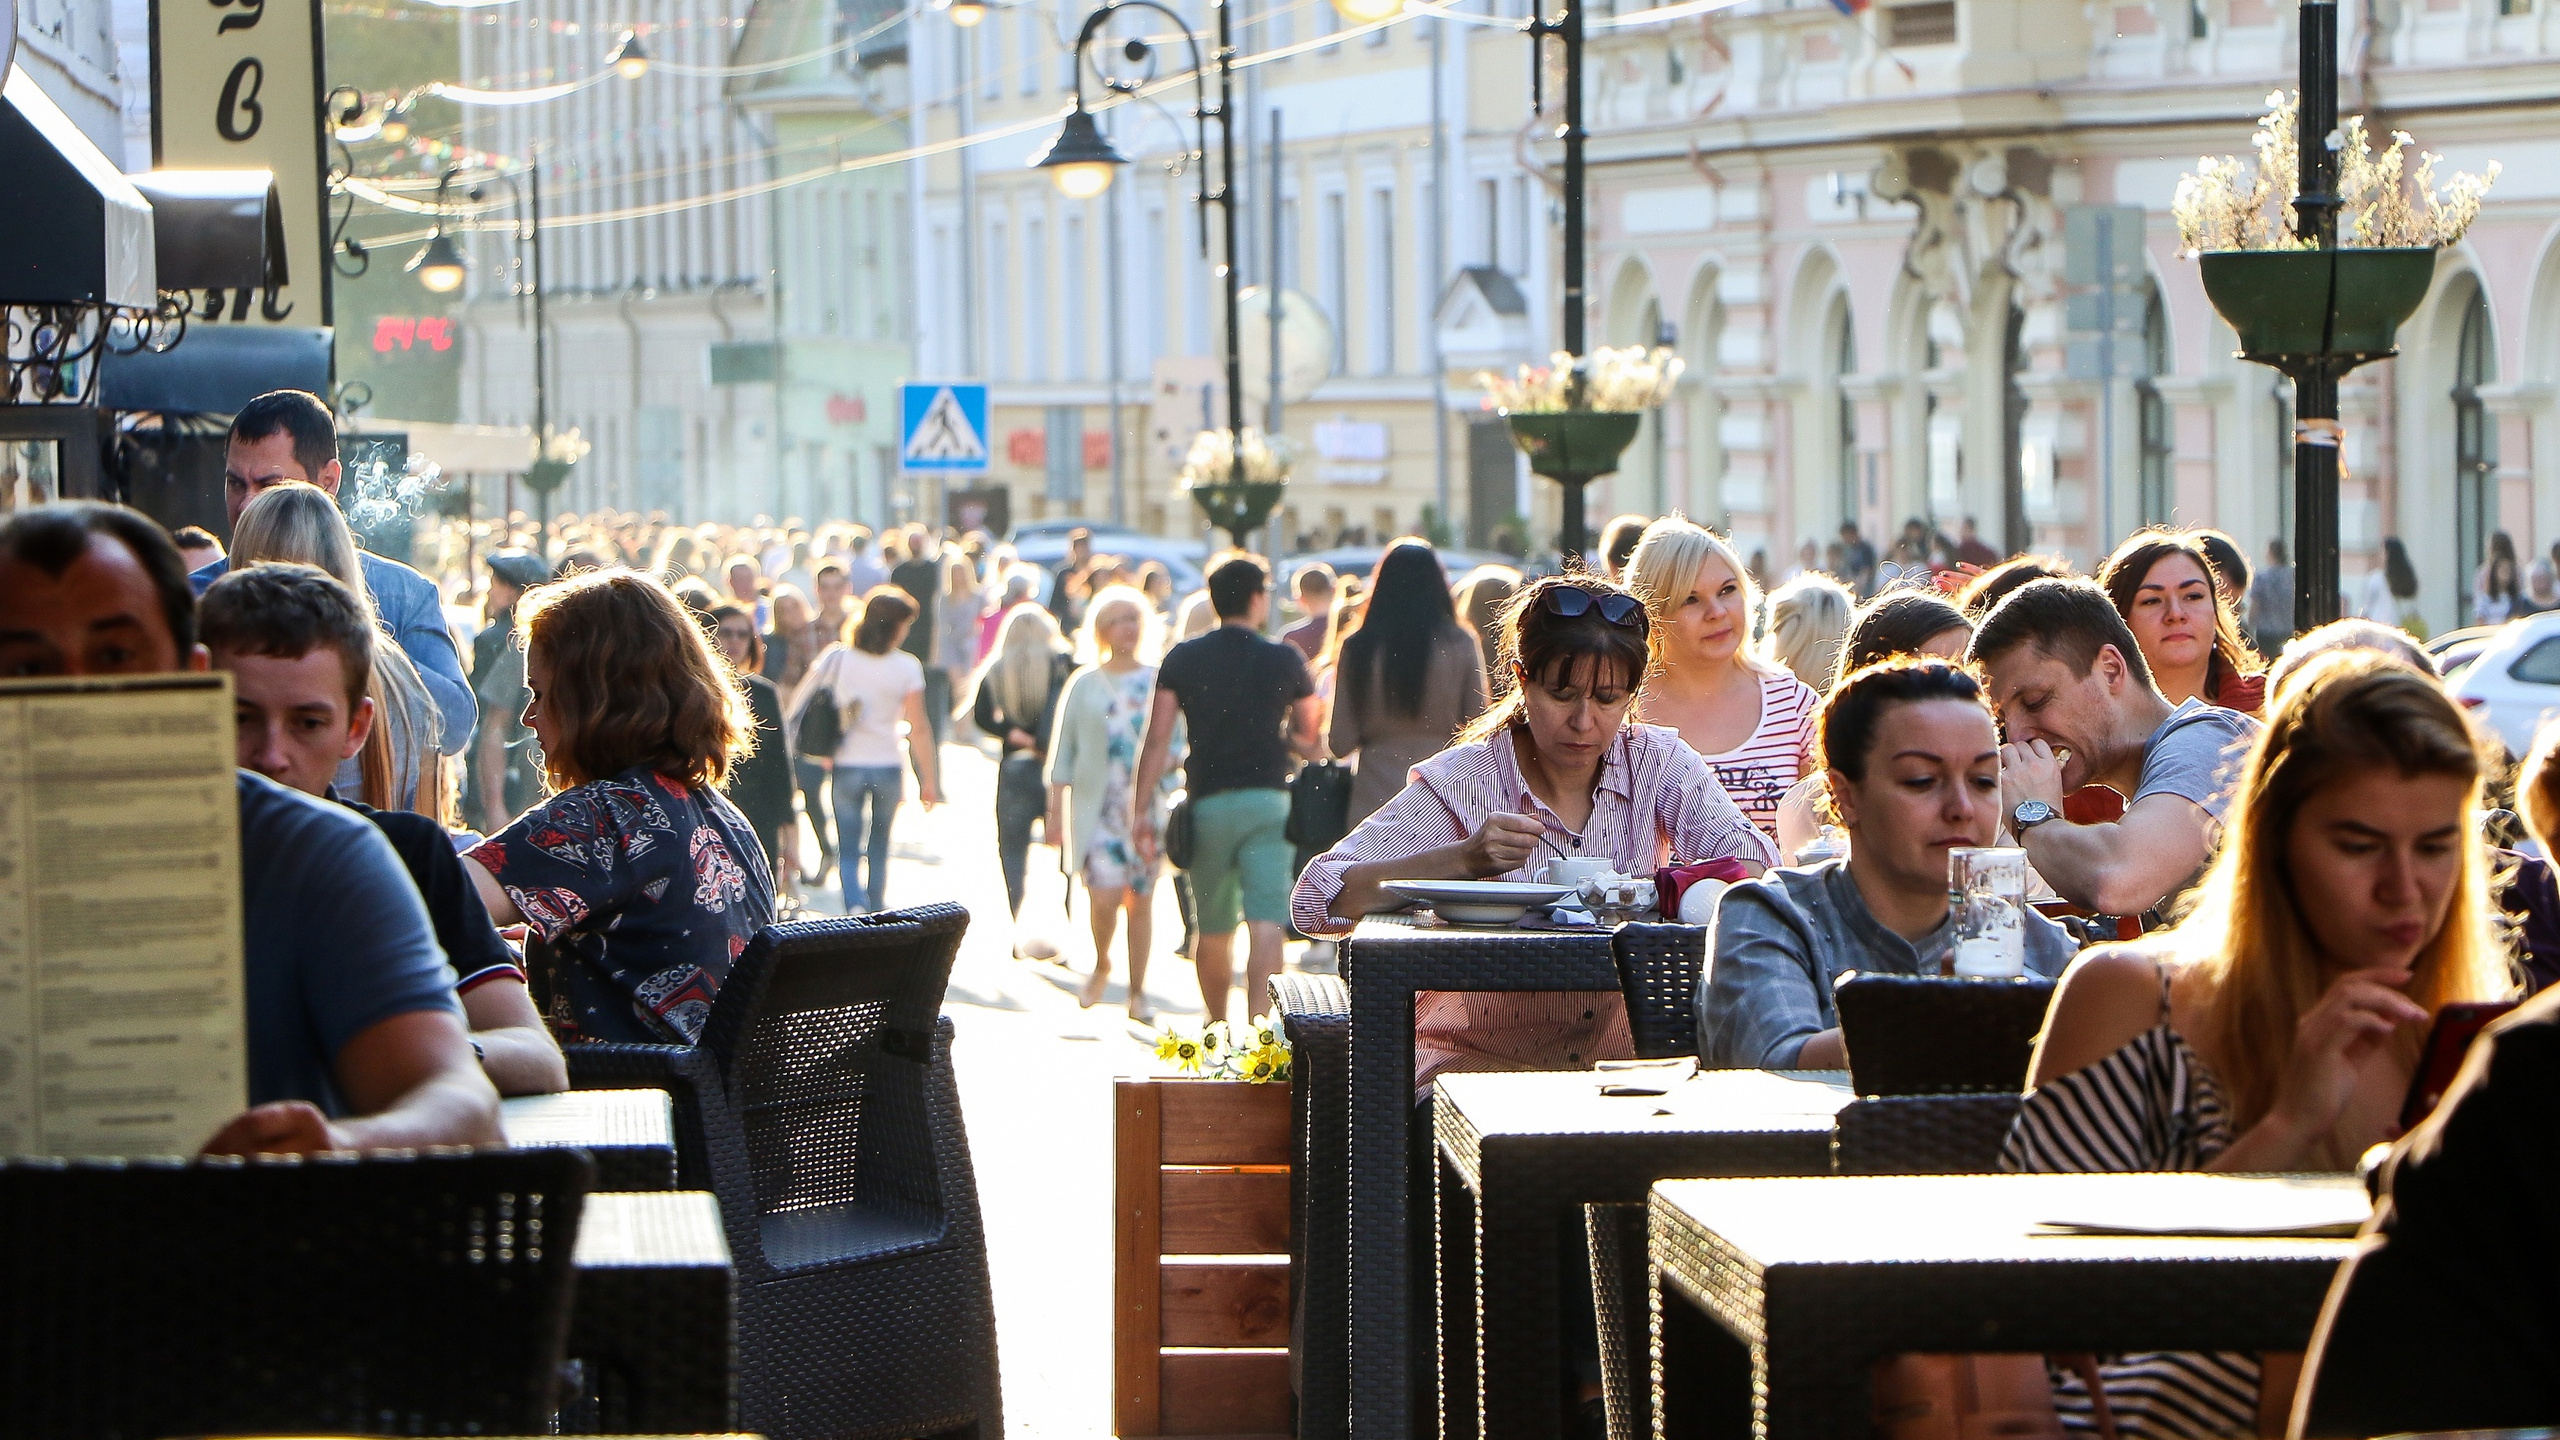 Вид на Волгу и веранды в цветах. Список самых атмосферных летних кафе и ресторанов в Нижнем Новгороде